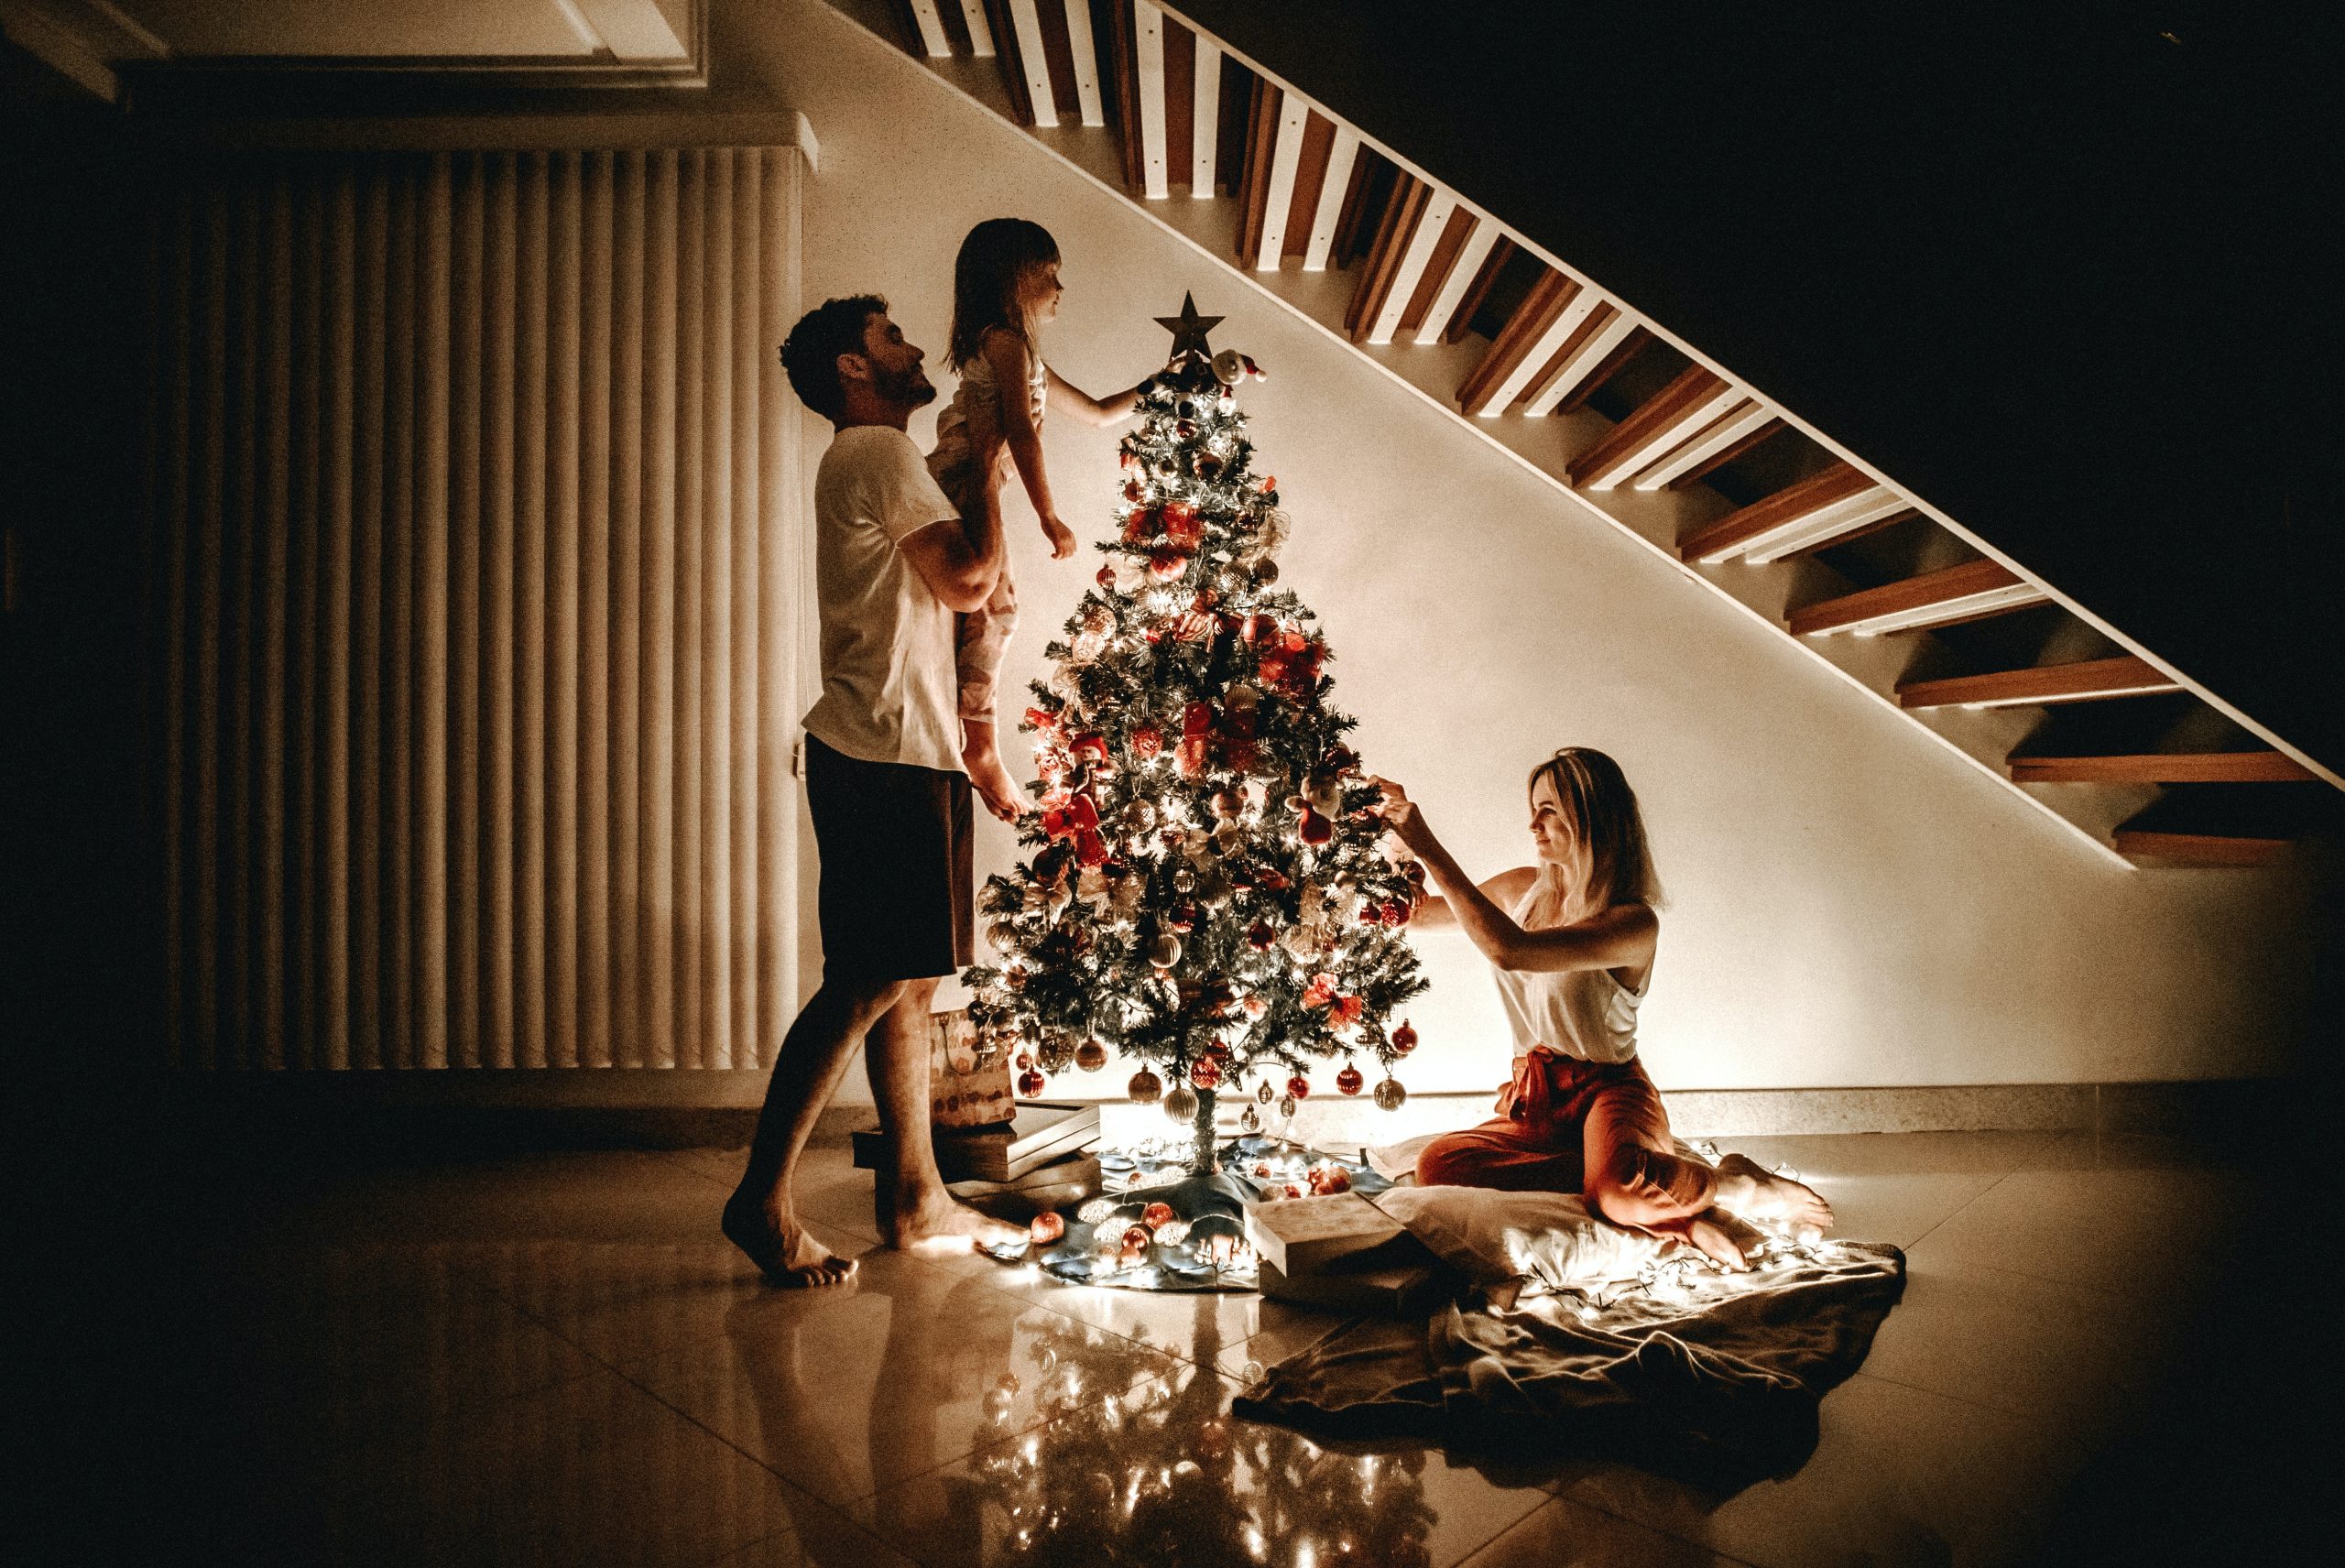 Navidad: lo que importa son las relaciones humanas